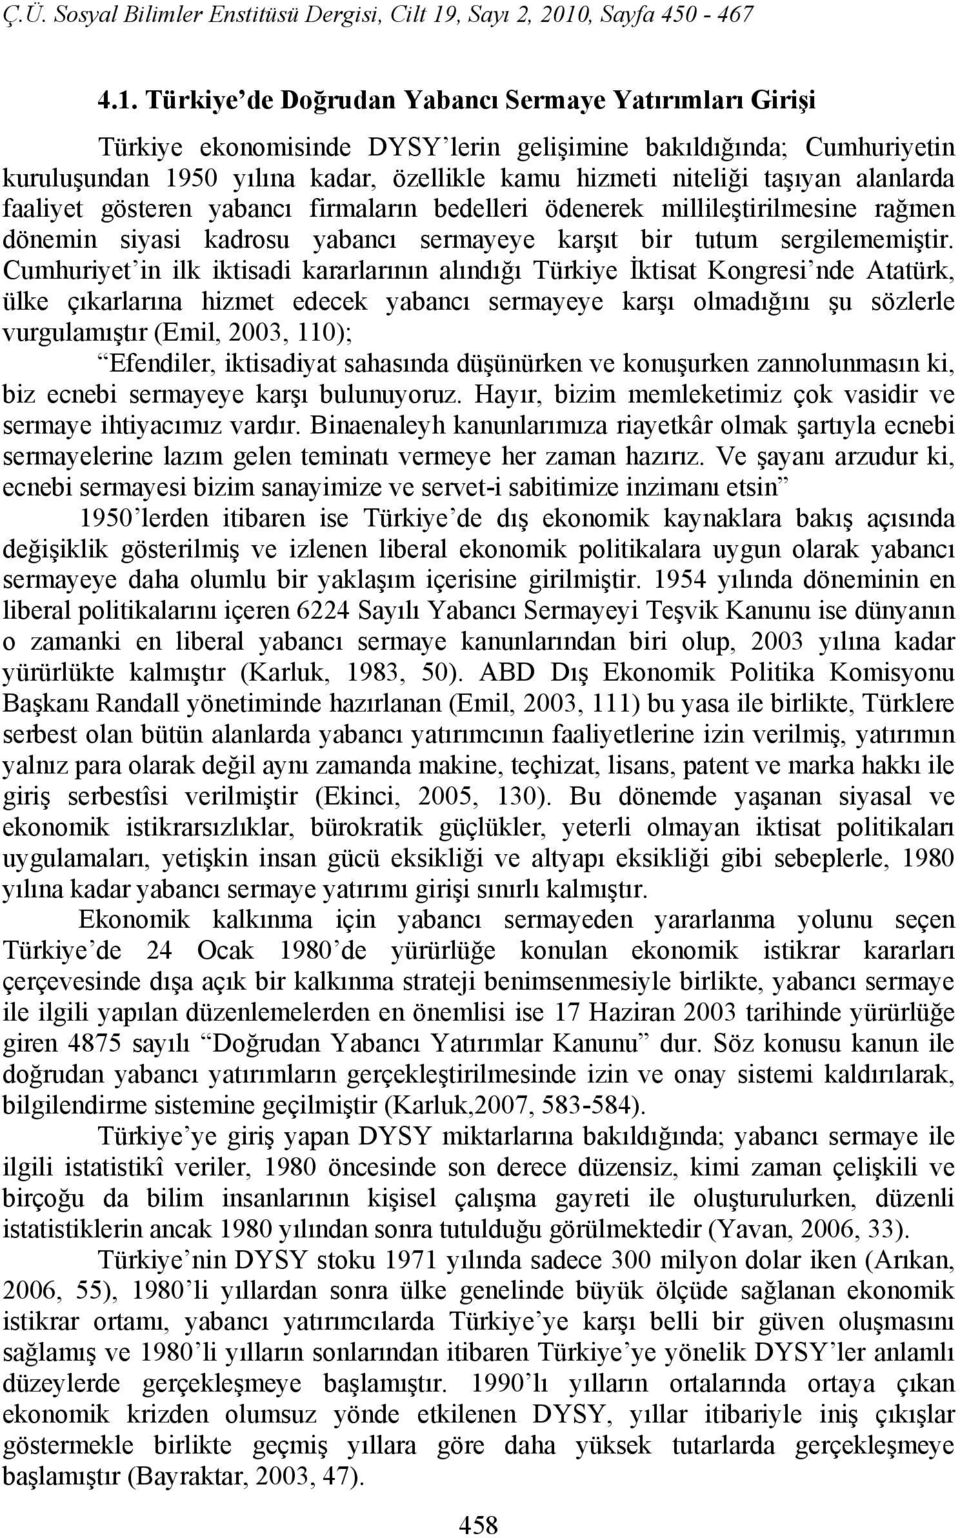 Cumhuriyet in ilk iktisadi kararlarının alındığı Türkiye İktisat Kongresi nde Atatürk, ülke çıkarlarına hizmet edecek yabancı sermayeye karşı olmadığını şu sözlerle vurgulamıştır (Emil, 2003, 110);